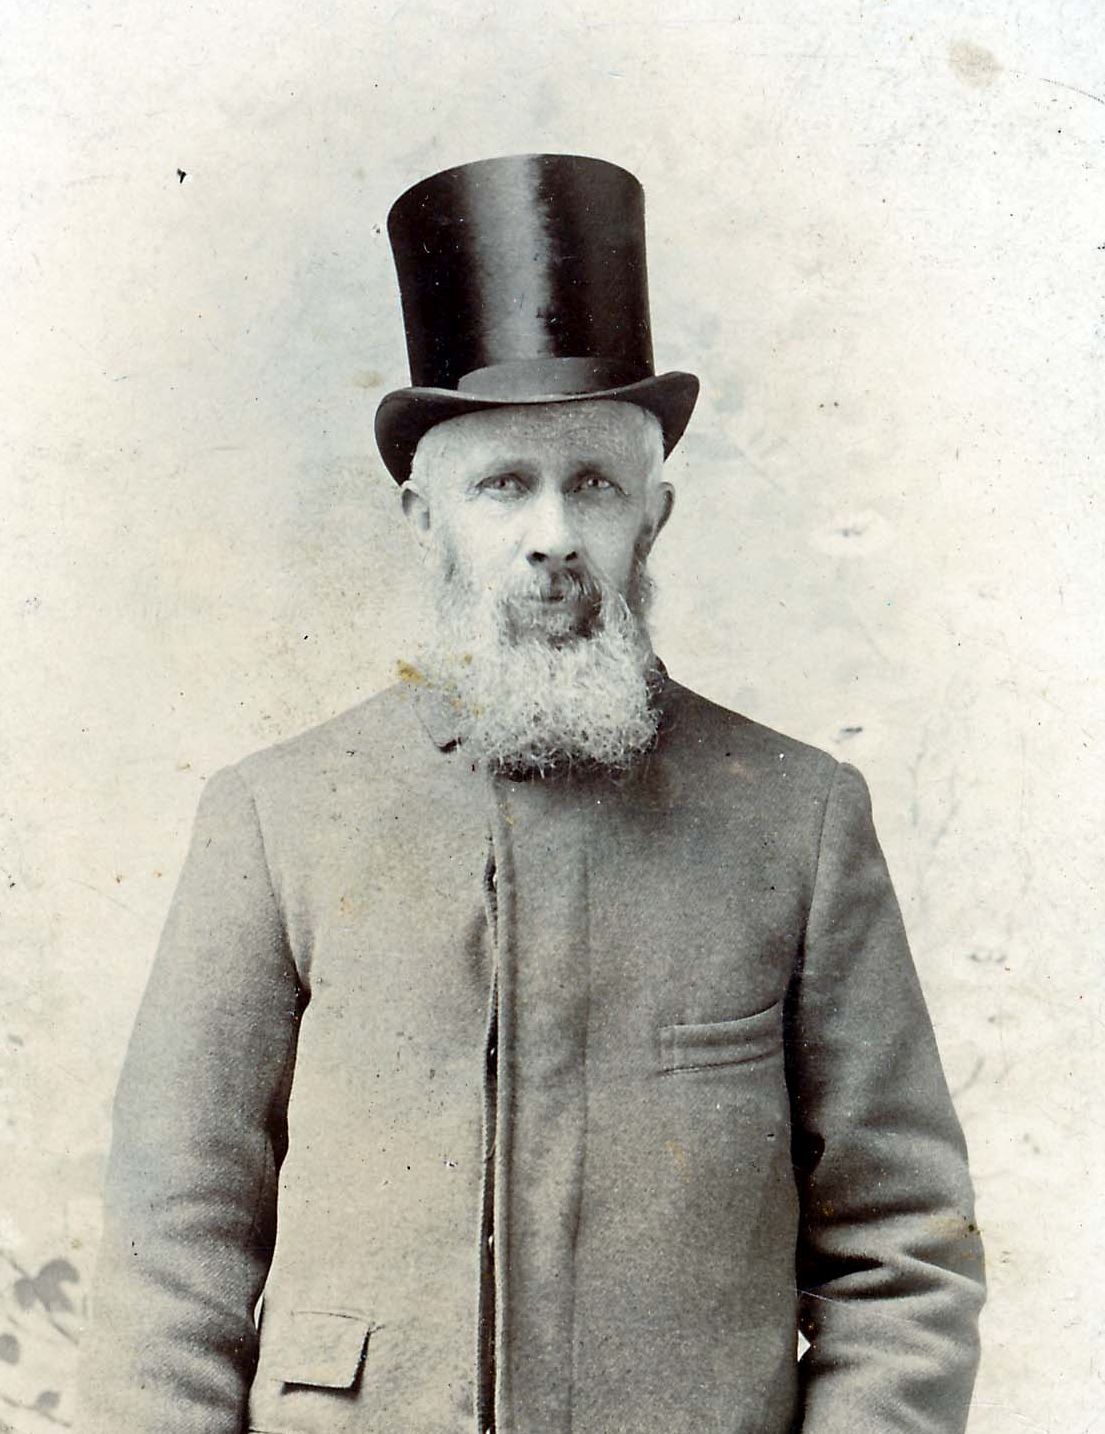 James Cross Brown (1837 - 1904)